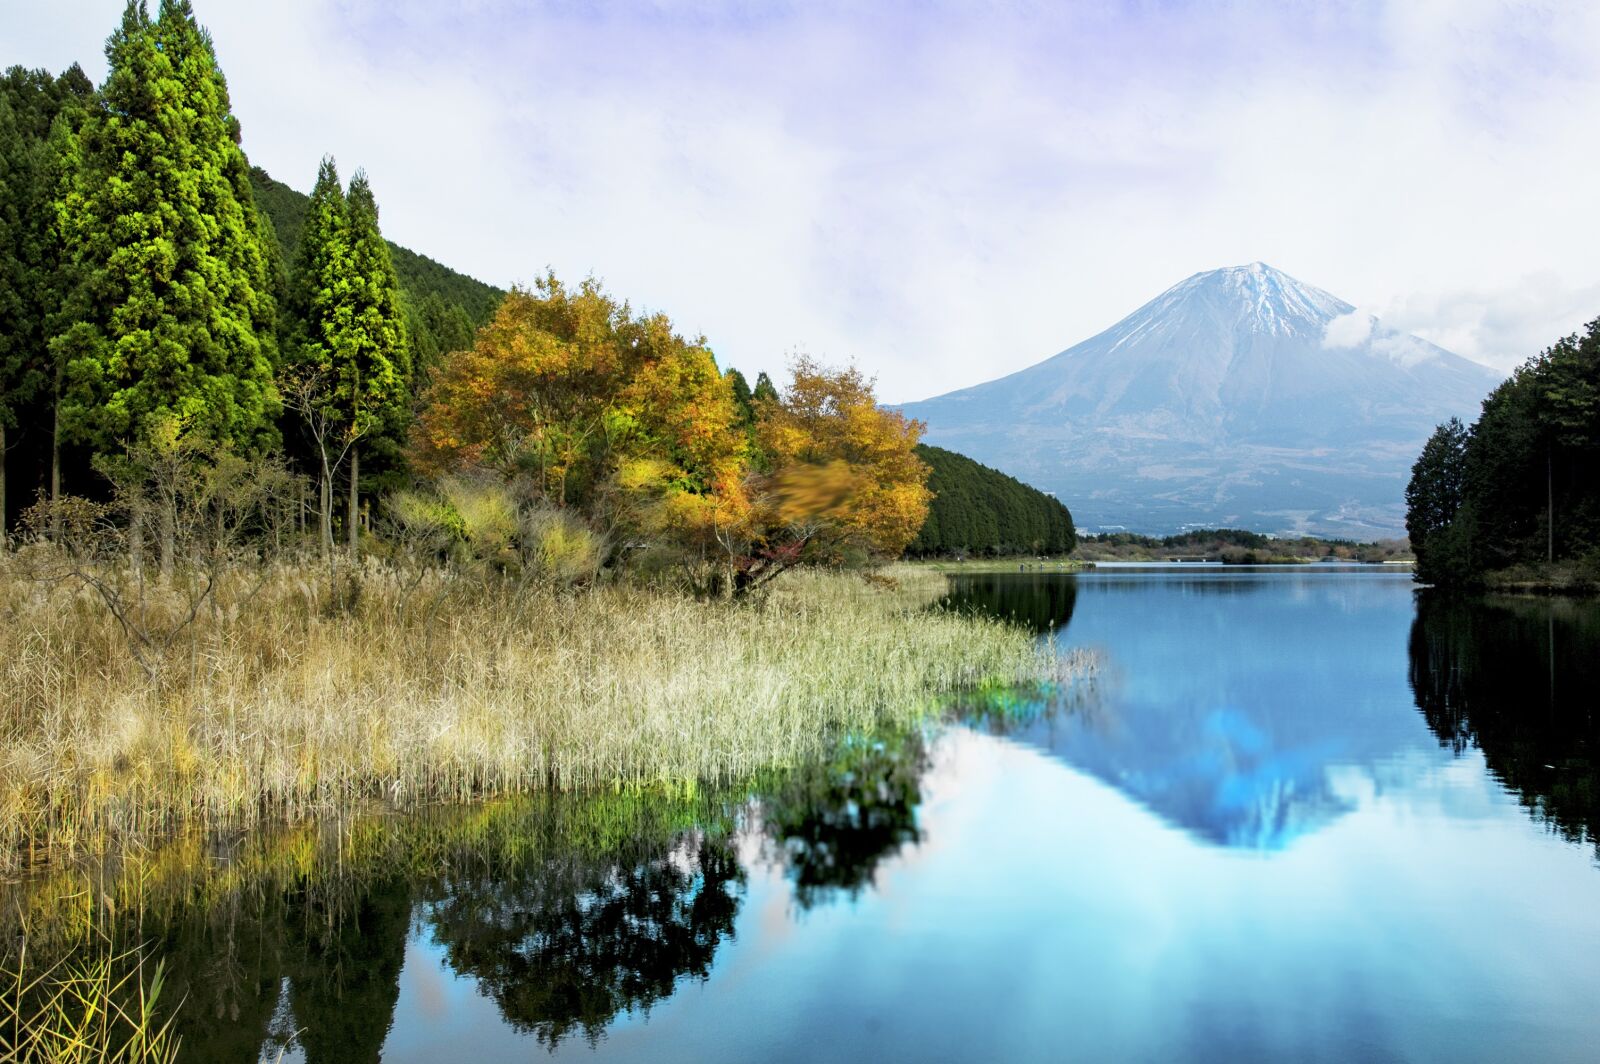 Nikon D70 sample photo. Mountain, lake, autumn photography